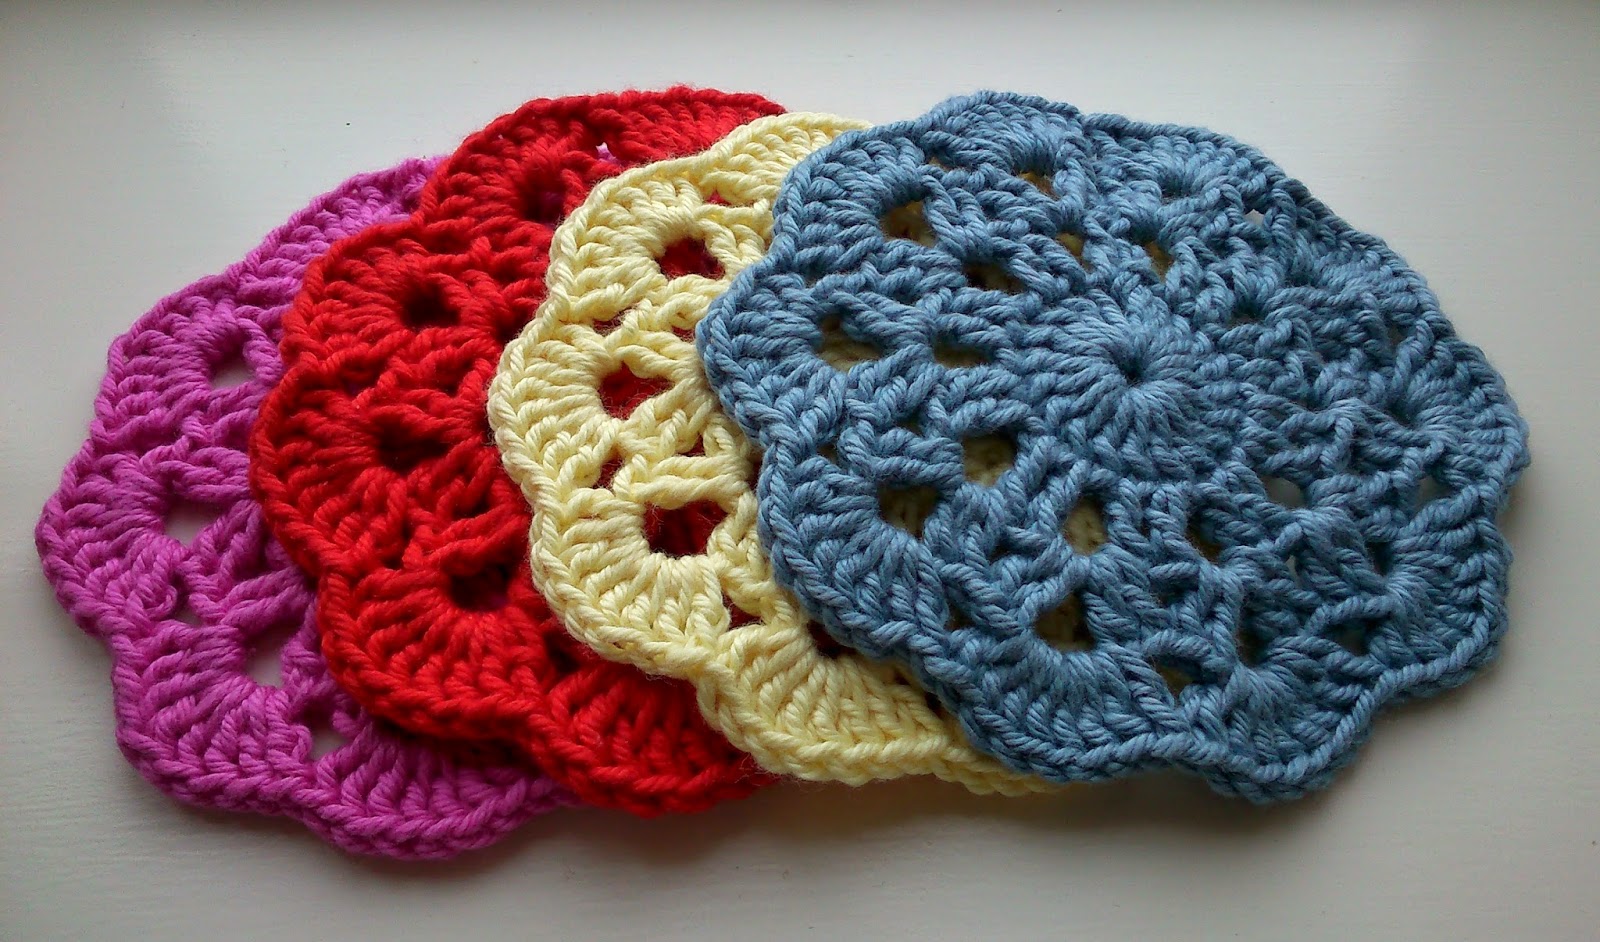 crochet coasters (free pattern)